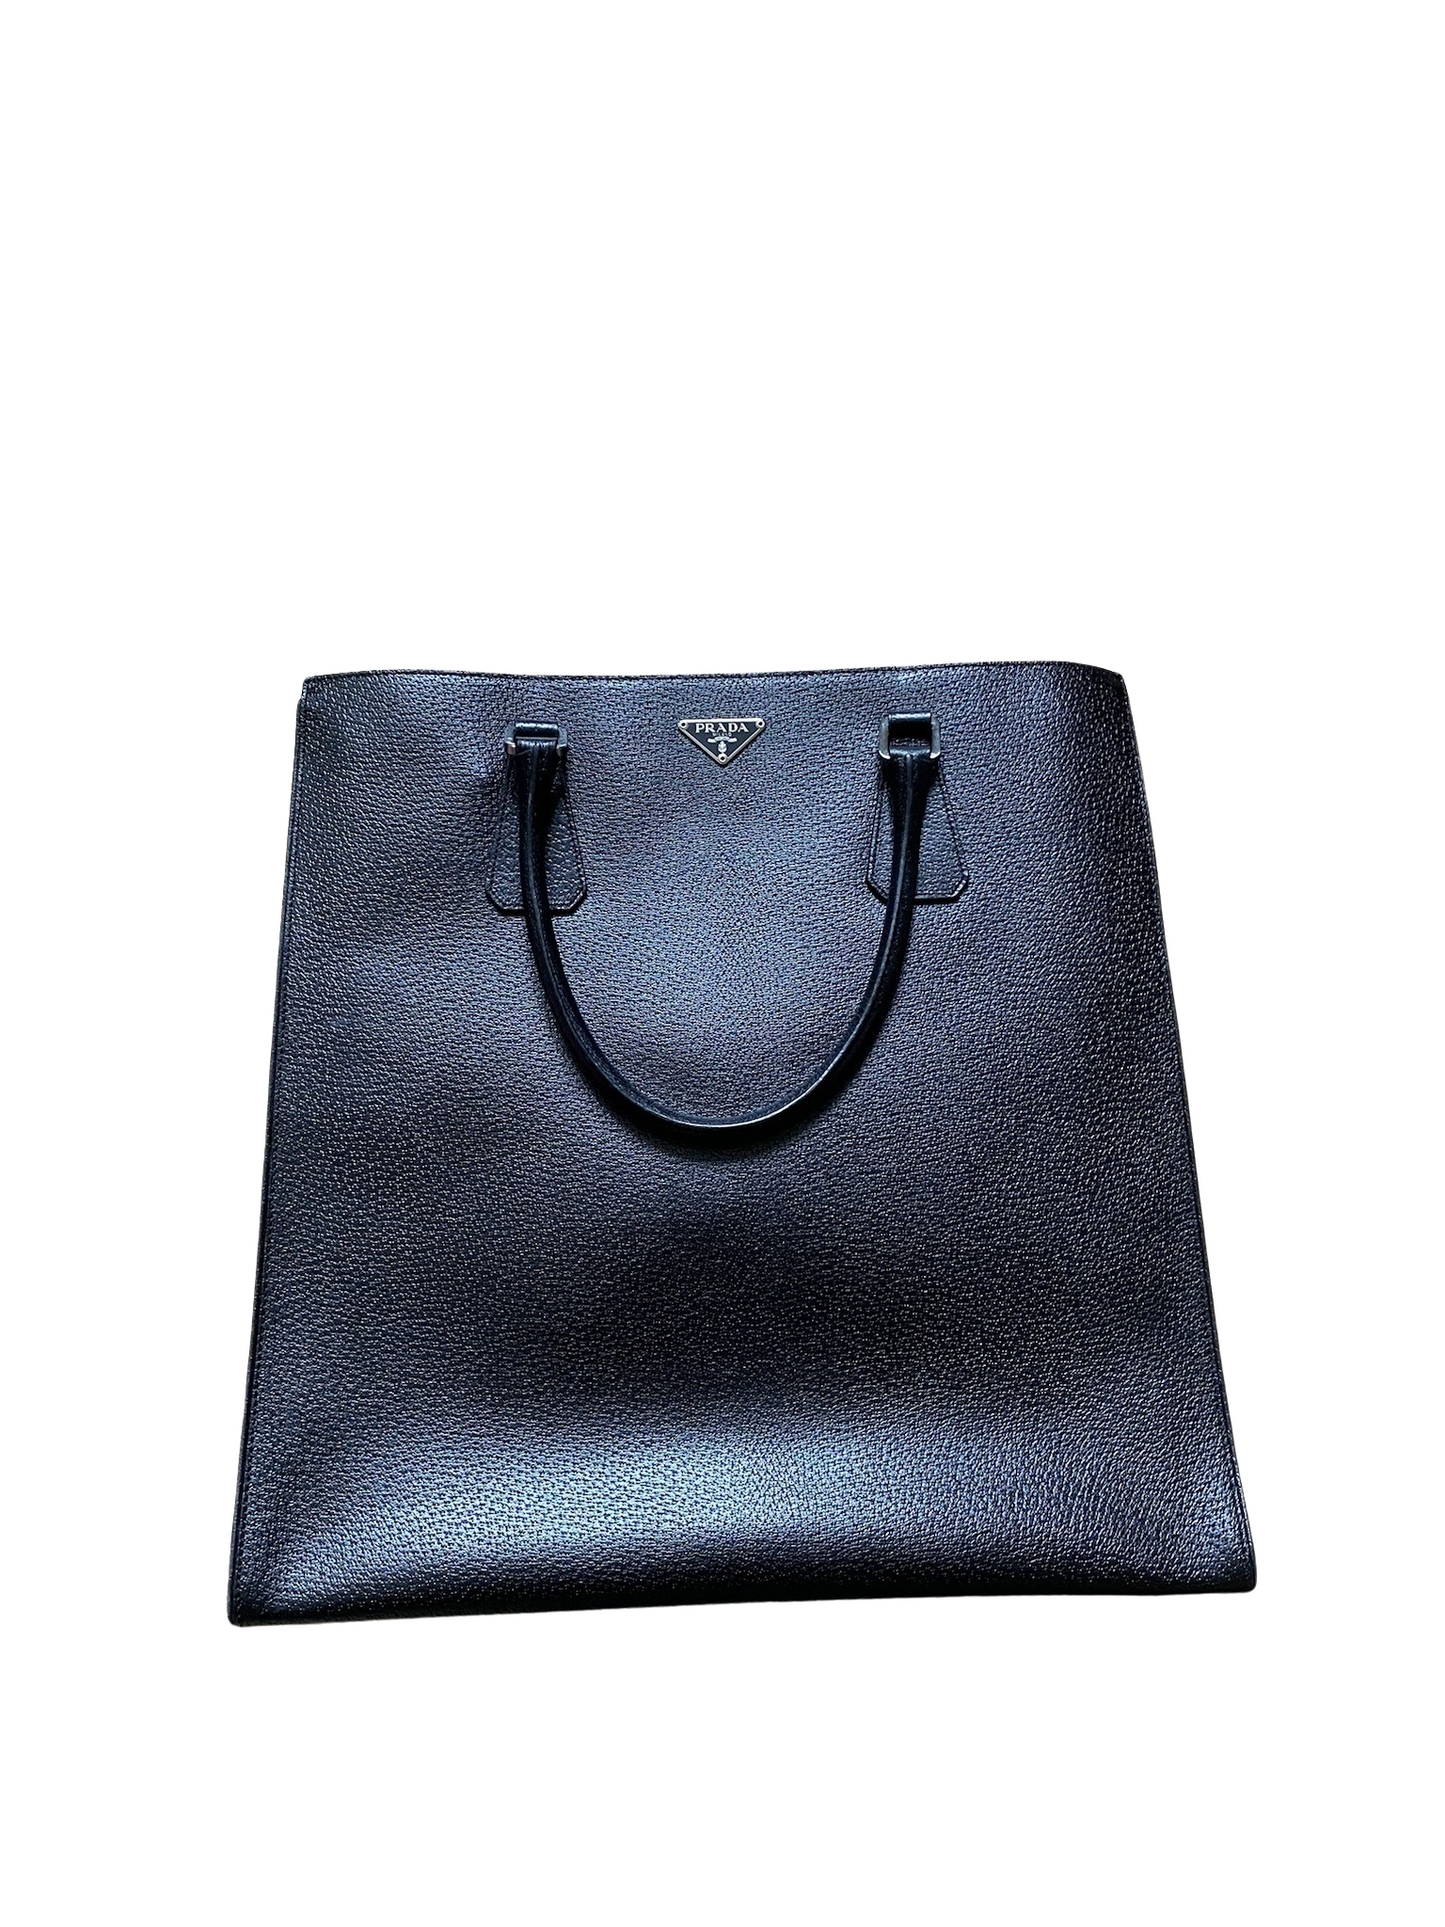 Prada Galleria Black Leather Tote Bag